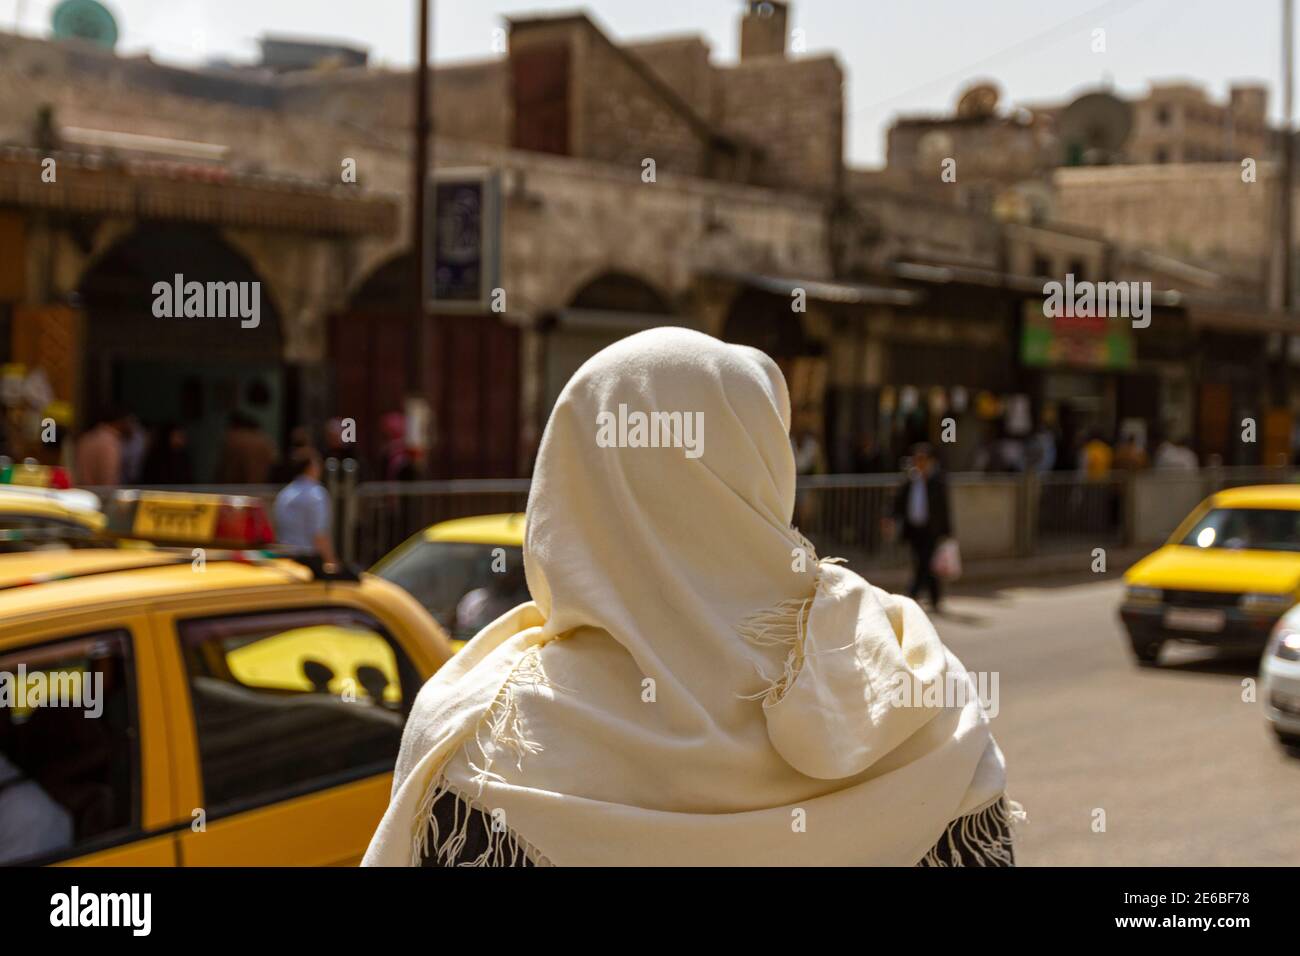 Un siriano che indossa abiti tradizionali locali è in piedi su una strada trafficata nel quartiere storico della città siriana settentrionale di Aleppo. Retro sfocato Foto Stock